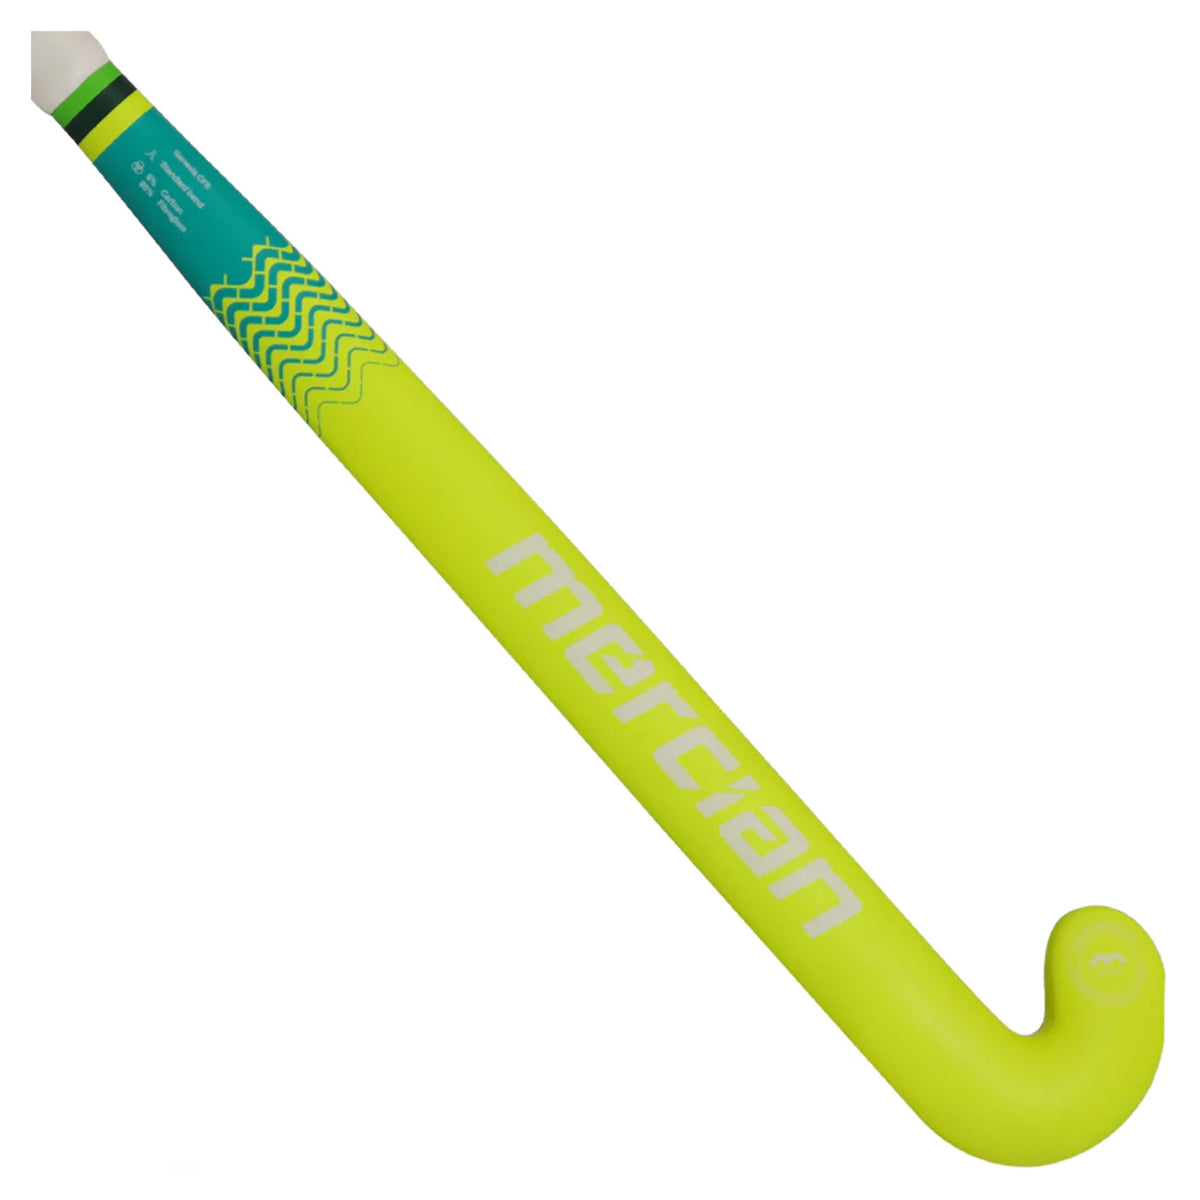 Mercian Genesis CF5 Indoor Hockey Stick: Black/Yellow